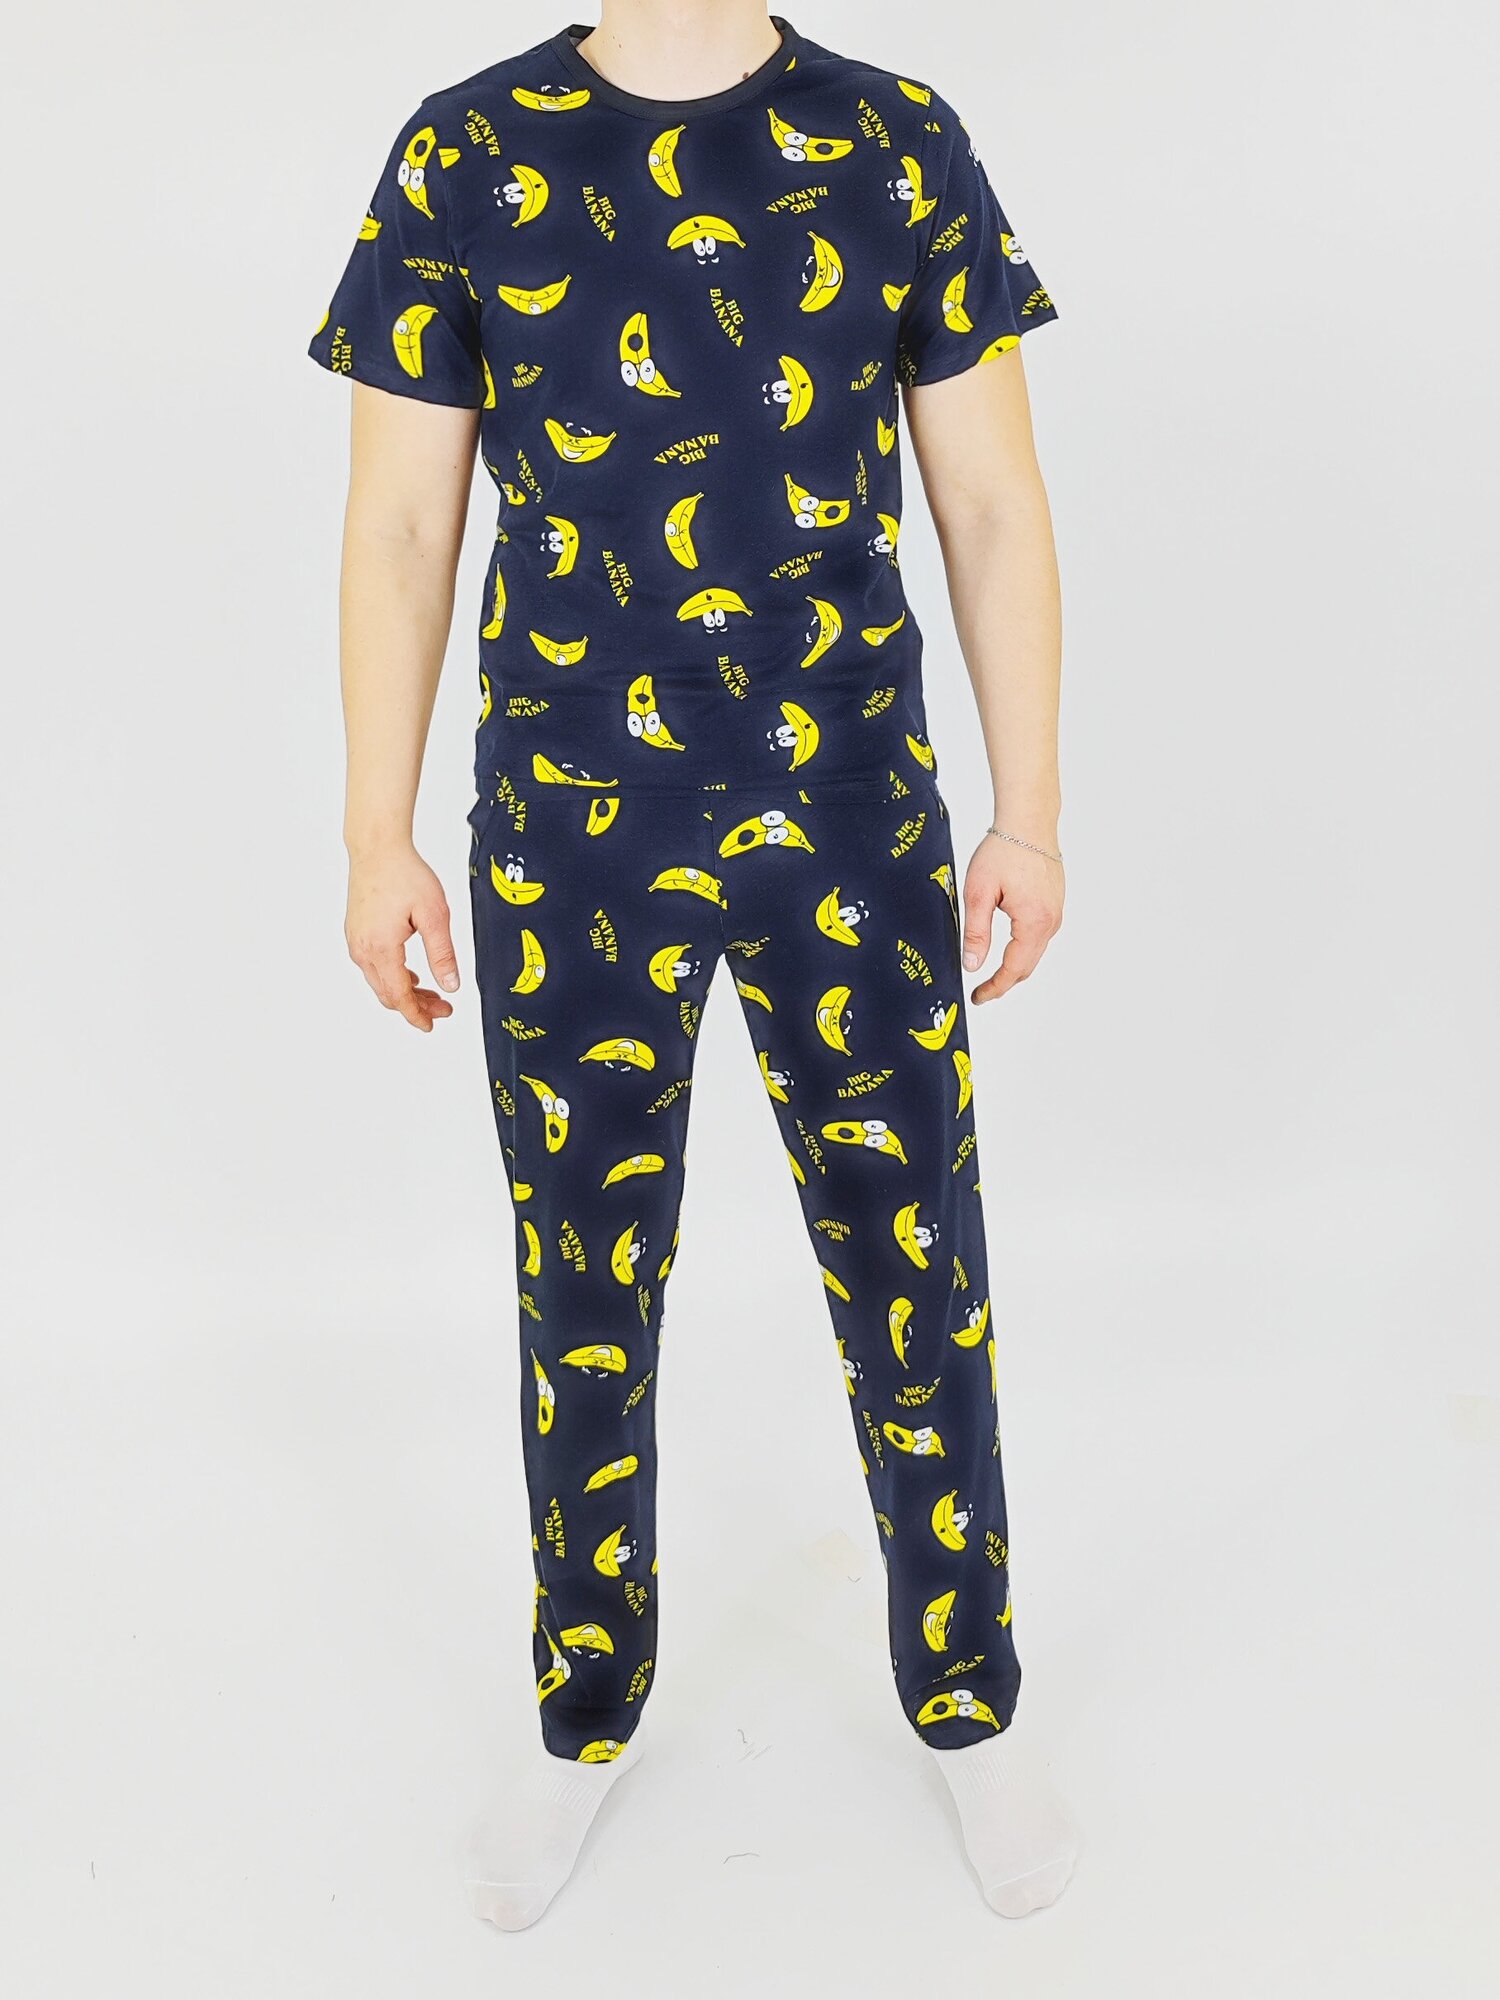 Мужская пижама, мужской пижамный комплект ARISTARHOV, Футболка + Брюки, Бананчик, синий желтый, размер 46 - фотография № 6